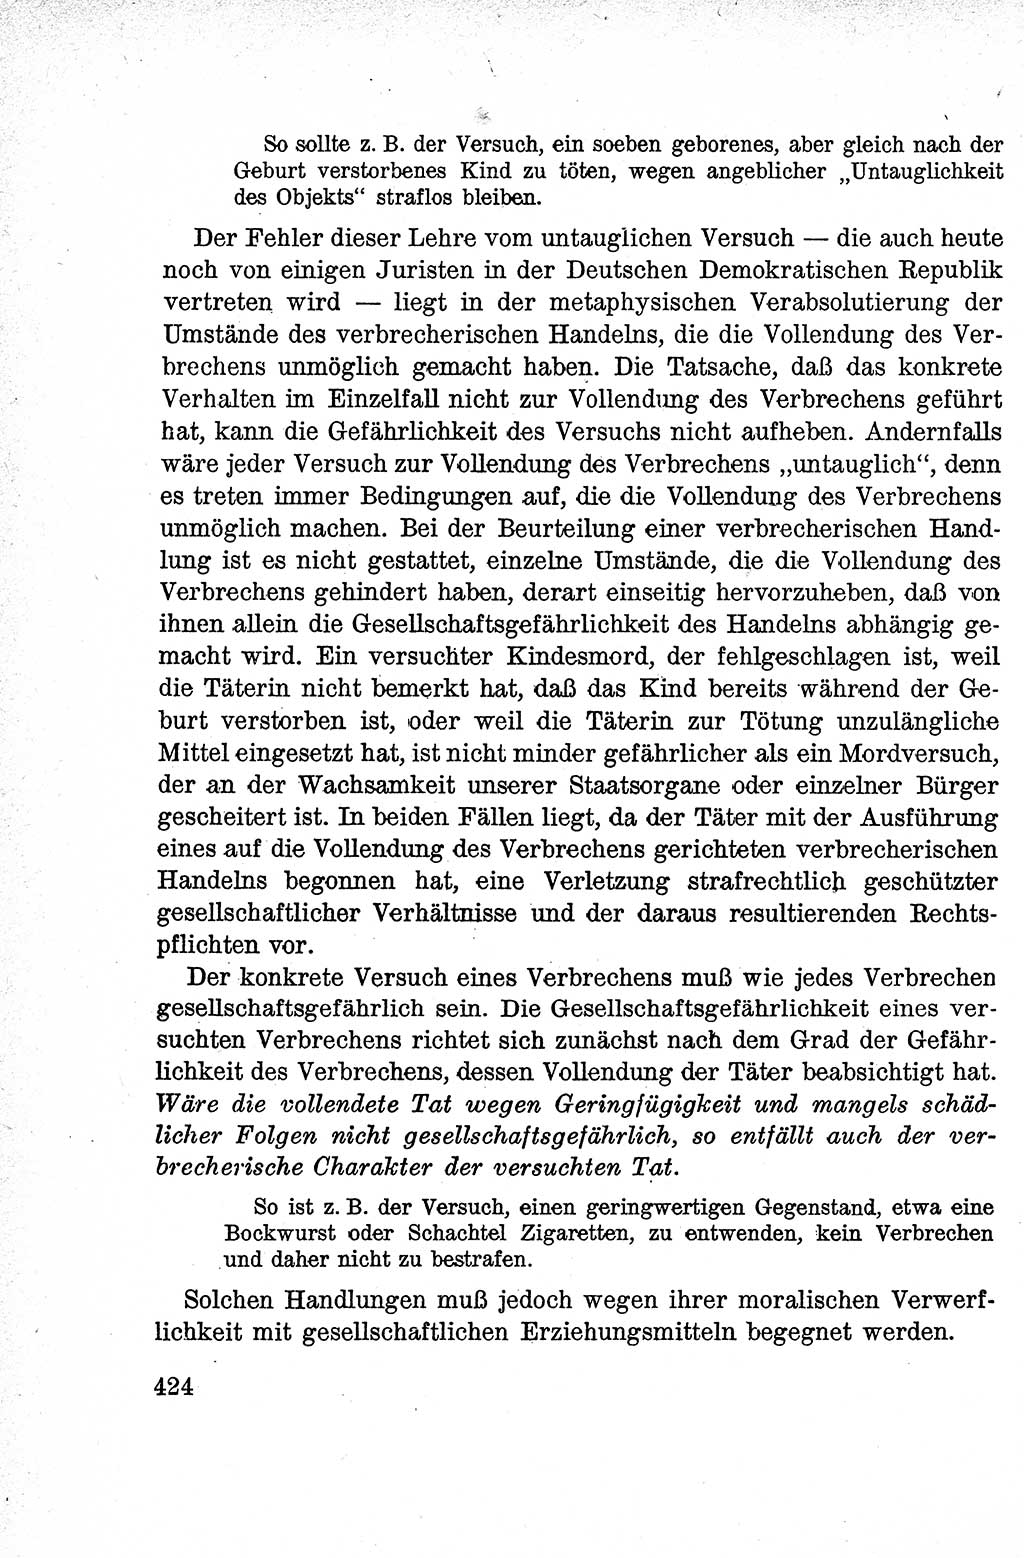 Lehrbuch des Strafrechts der Deutschen Demokratischen Republik (DDR), Allgemeiner Teil 1959, Seite 424 (Lb. Strafr. DDR AT 1959, S. 424)